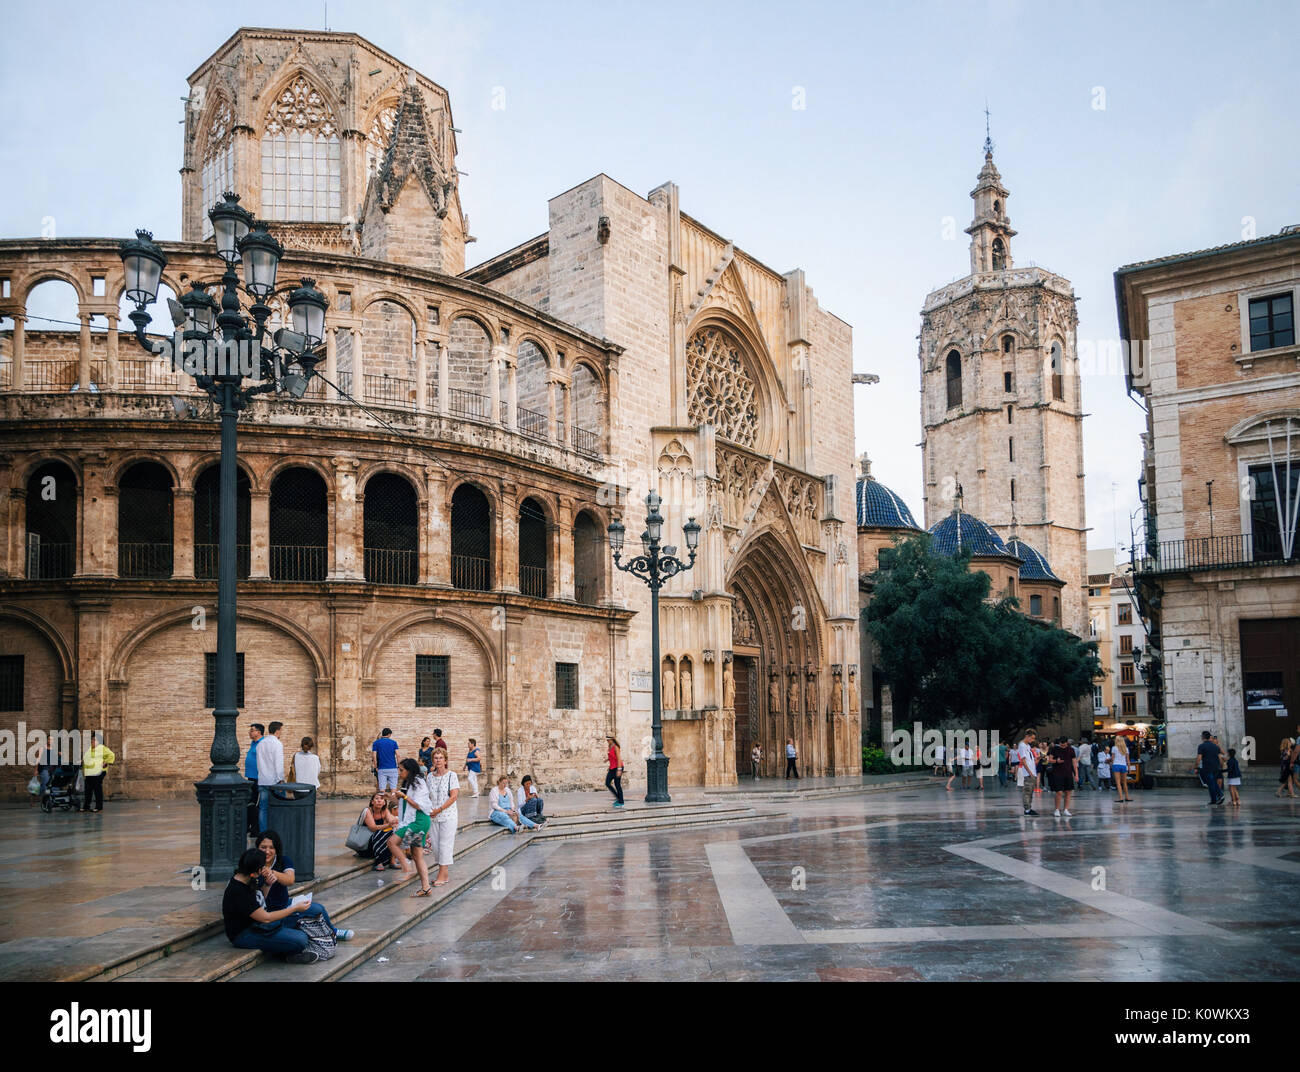 Valence, Espagne - juin 2, 2016 : Square de Saint Mary avec les collectivités locales et les touristes dans la vieille ville de Valence, dans la soirée, l'Espagne Banque D'Images